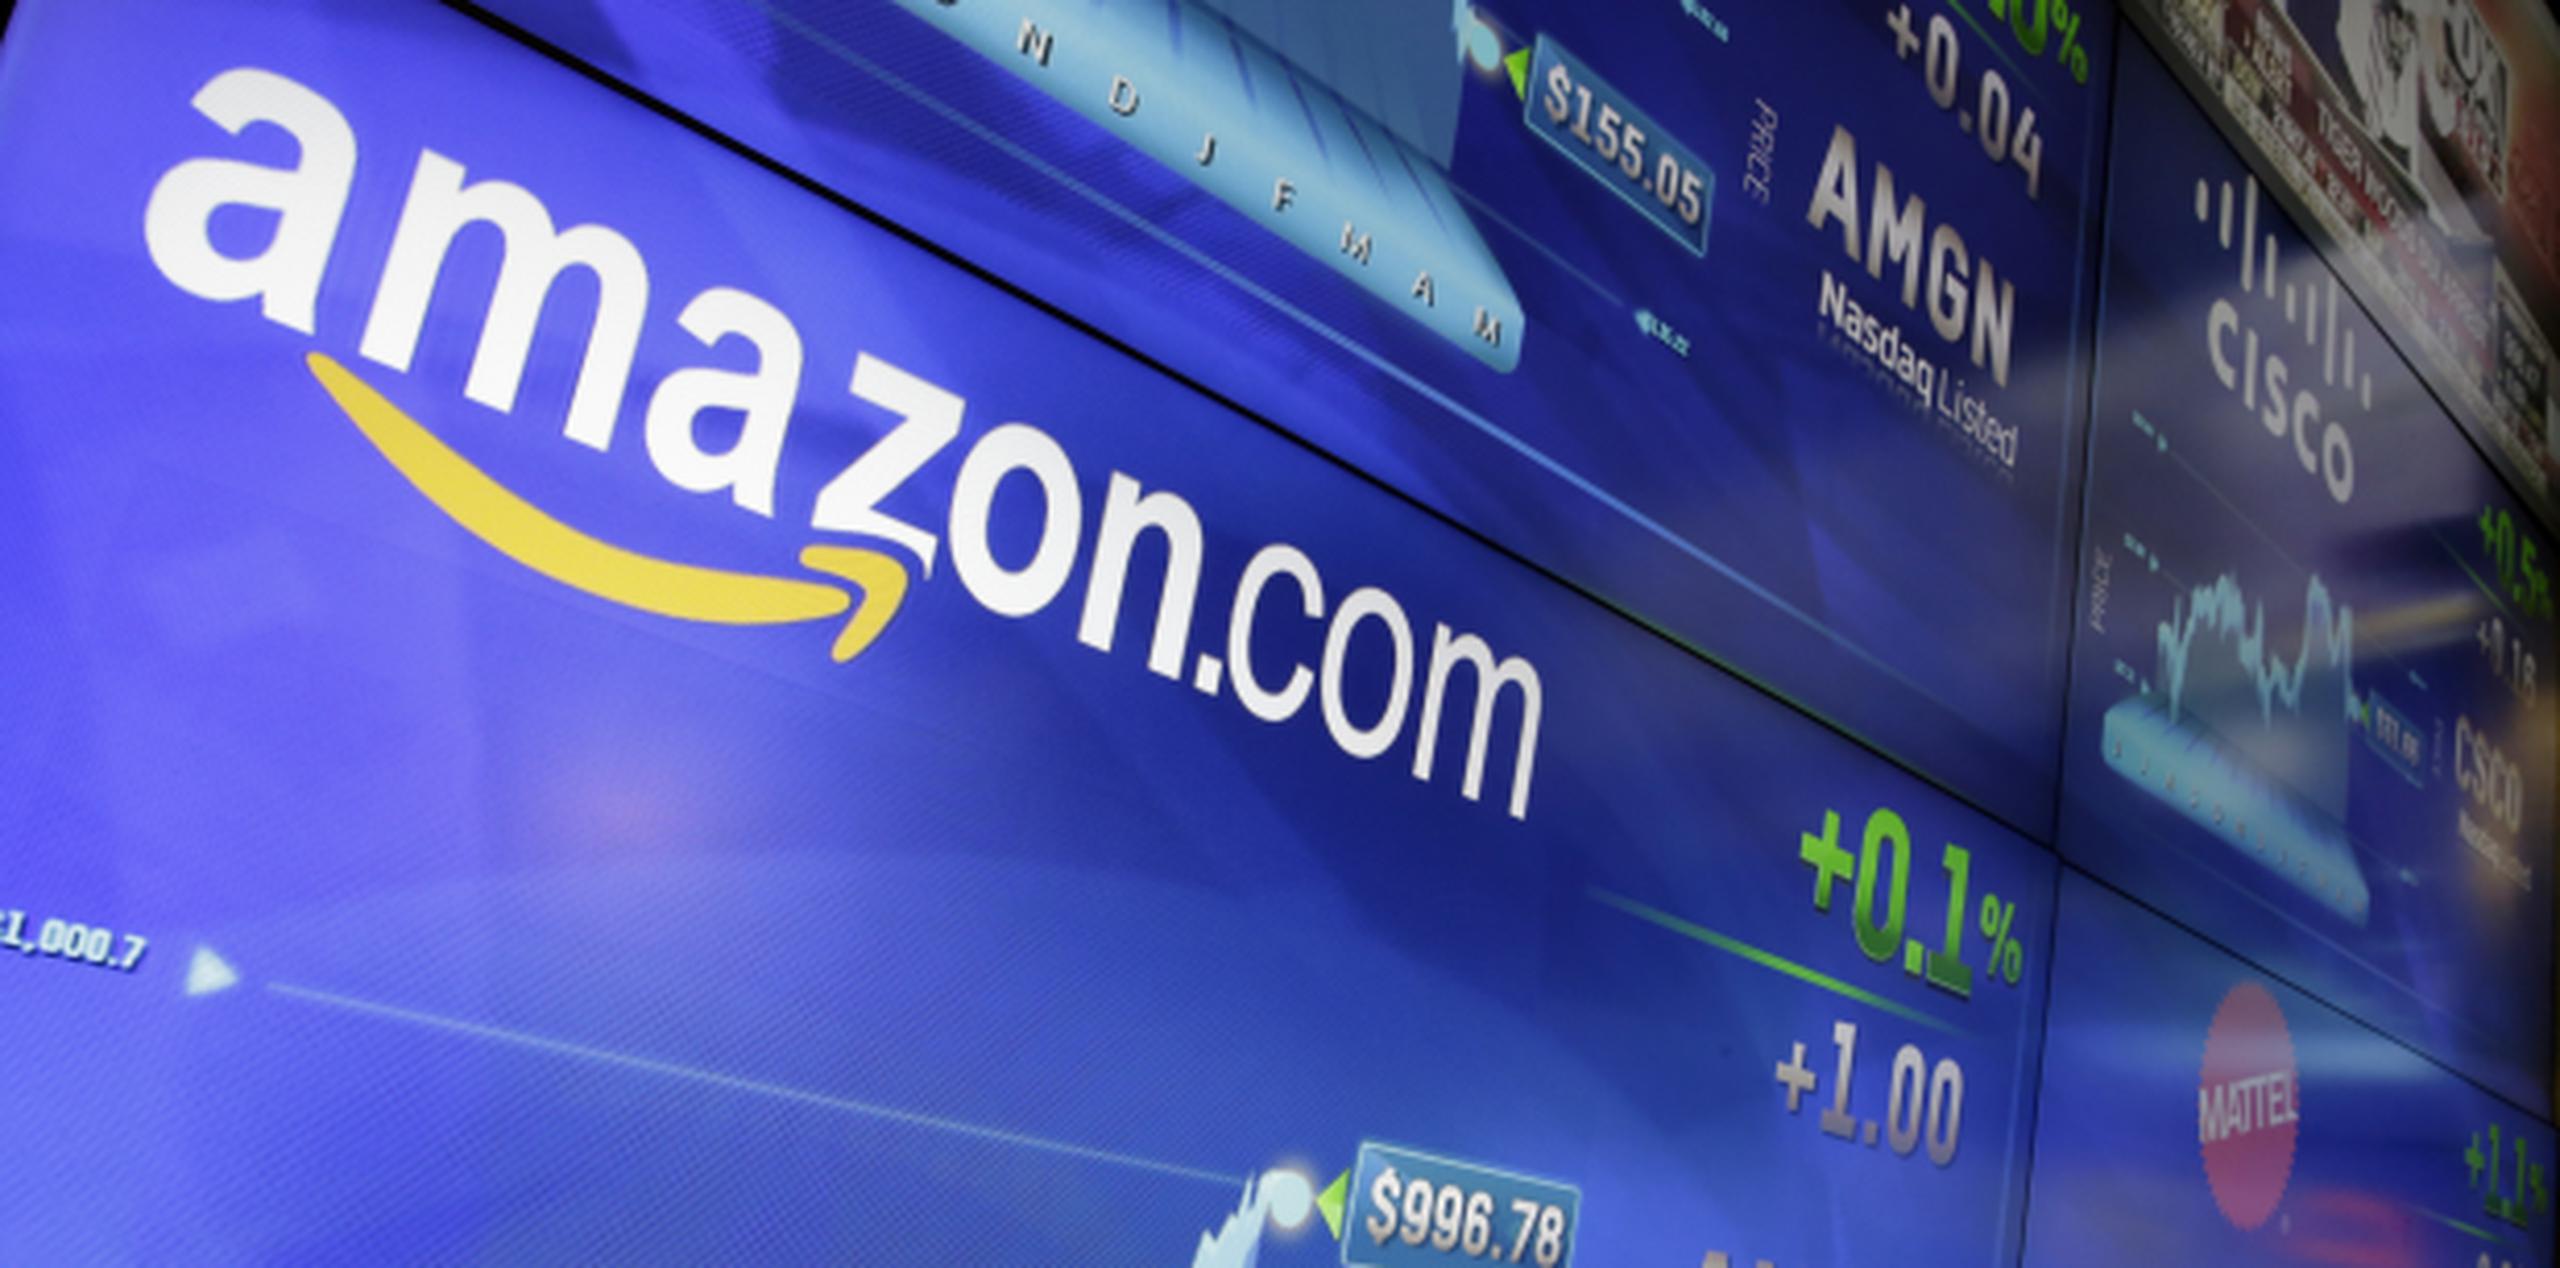 Amazon enfrenta una demanda en Carolina del Sur para recuperar impuestos que según dice, no se le han pagado. (Archivo)